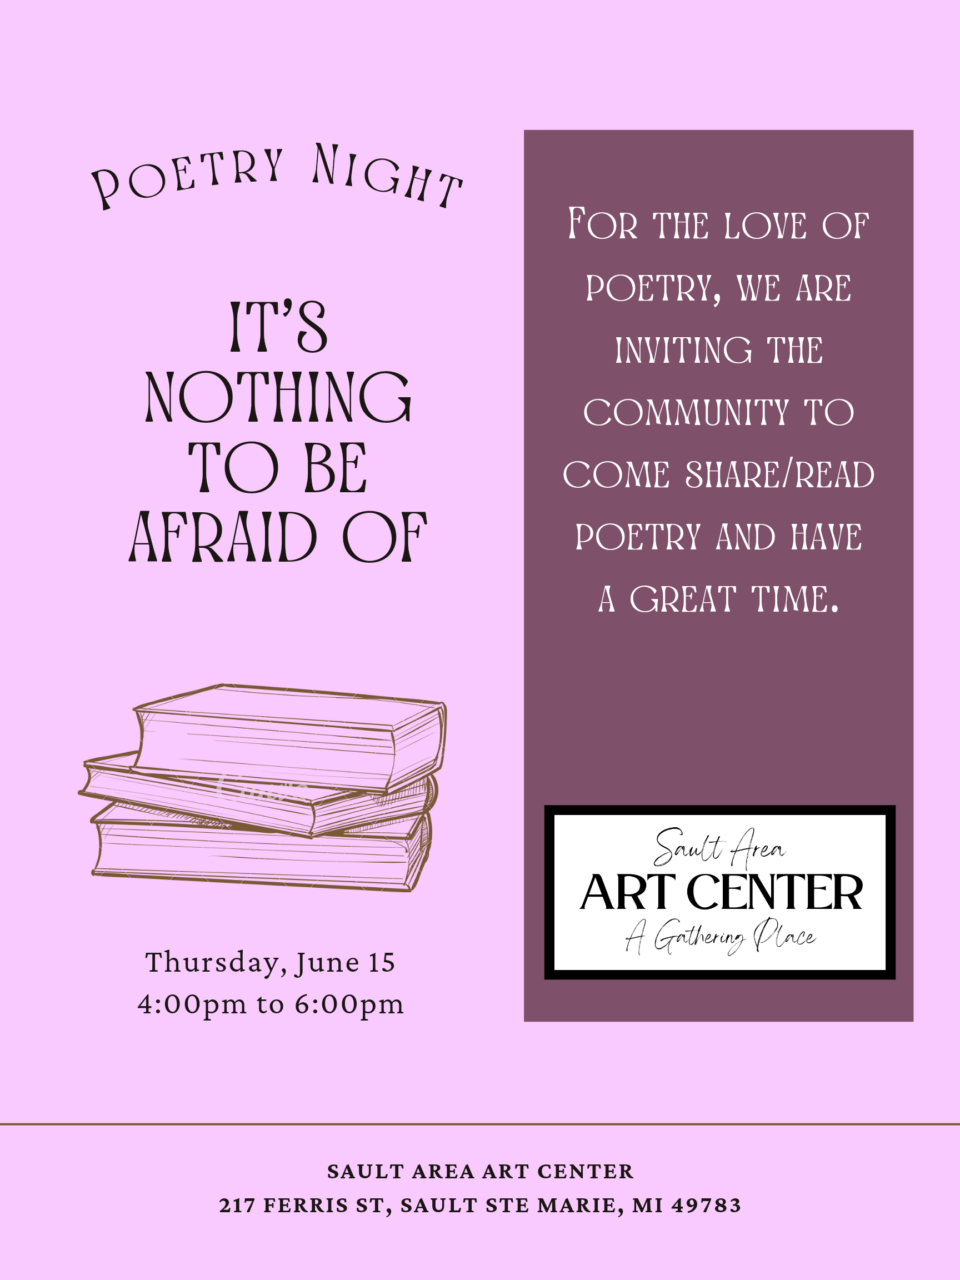 Poetry night on June 15